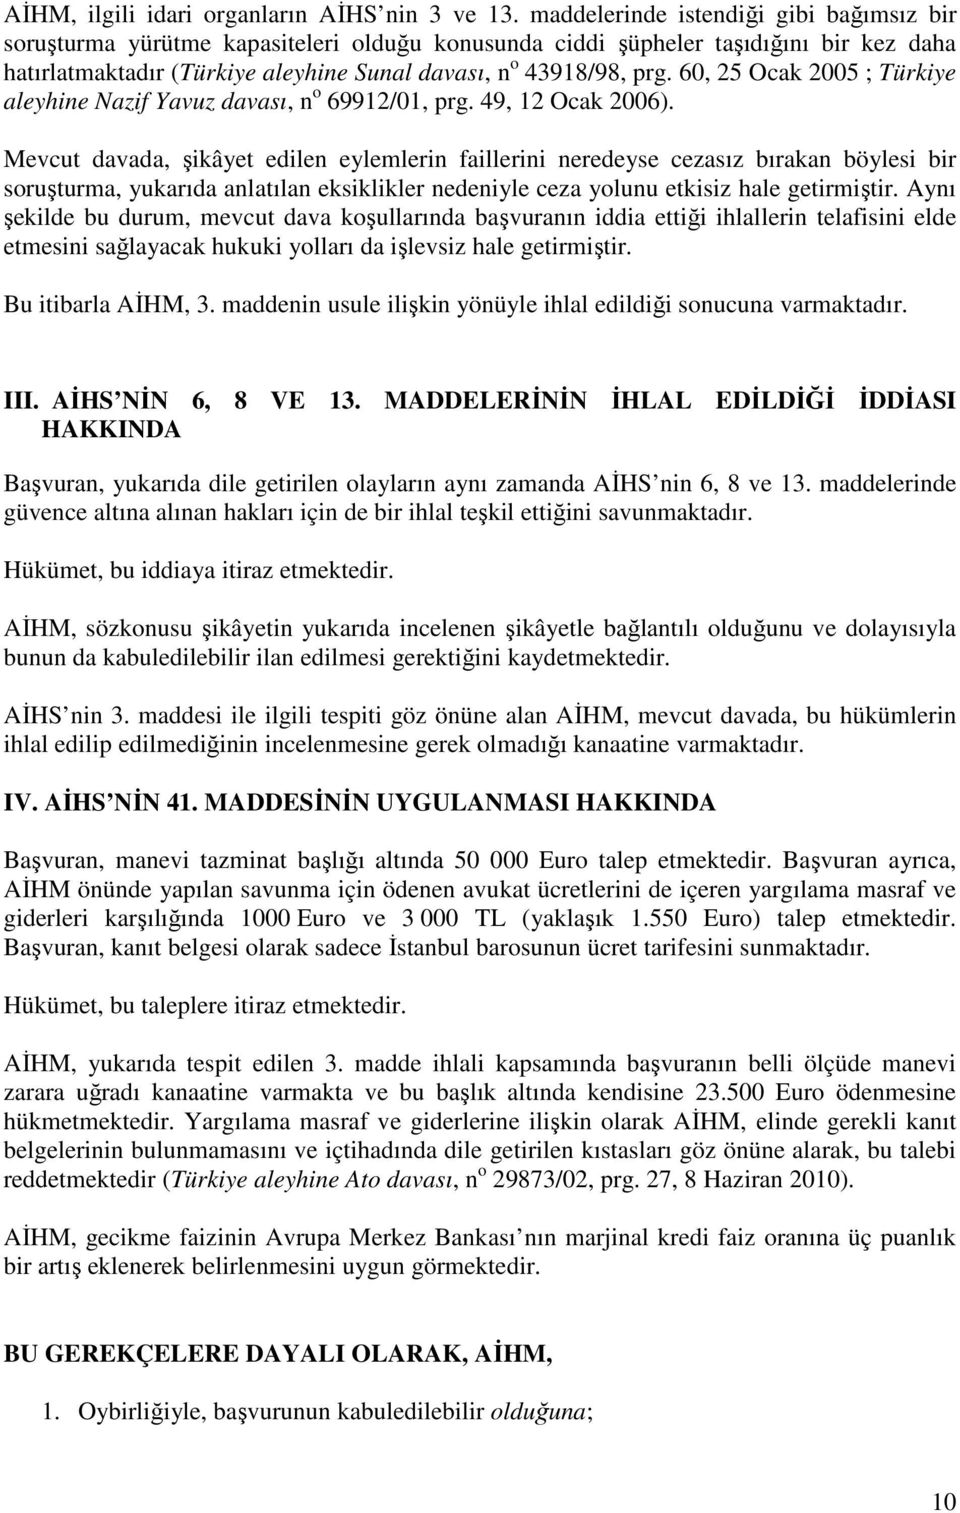 60, 25 Ocak 2005 ; Türkiye aleyhine Nazif Yavuz davası, n o 69912/01, prg. 49, 12 Ocak 2006).